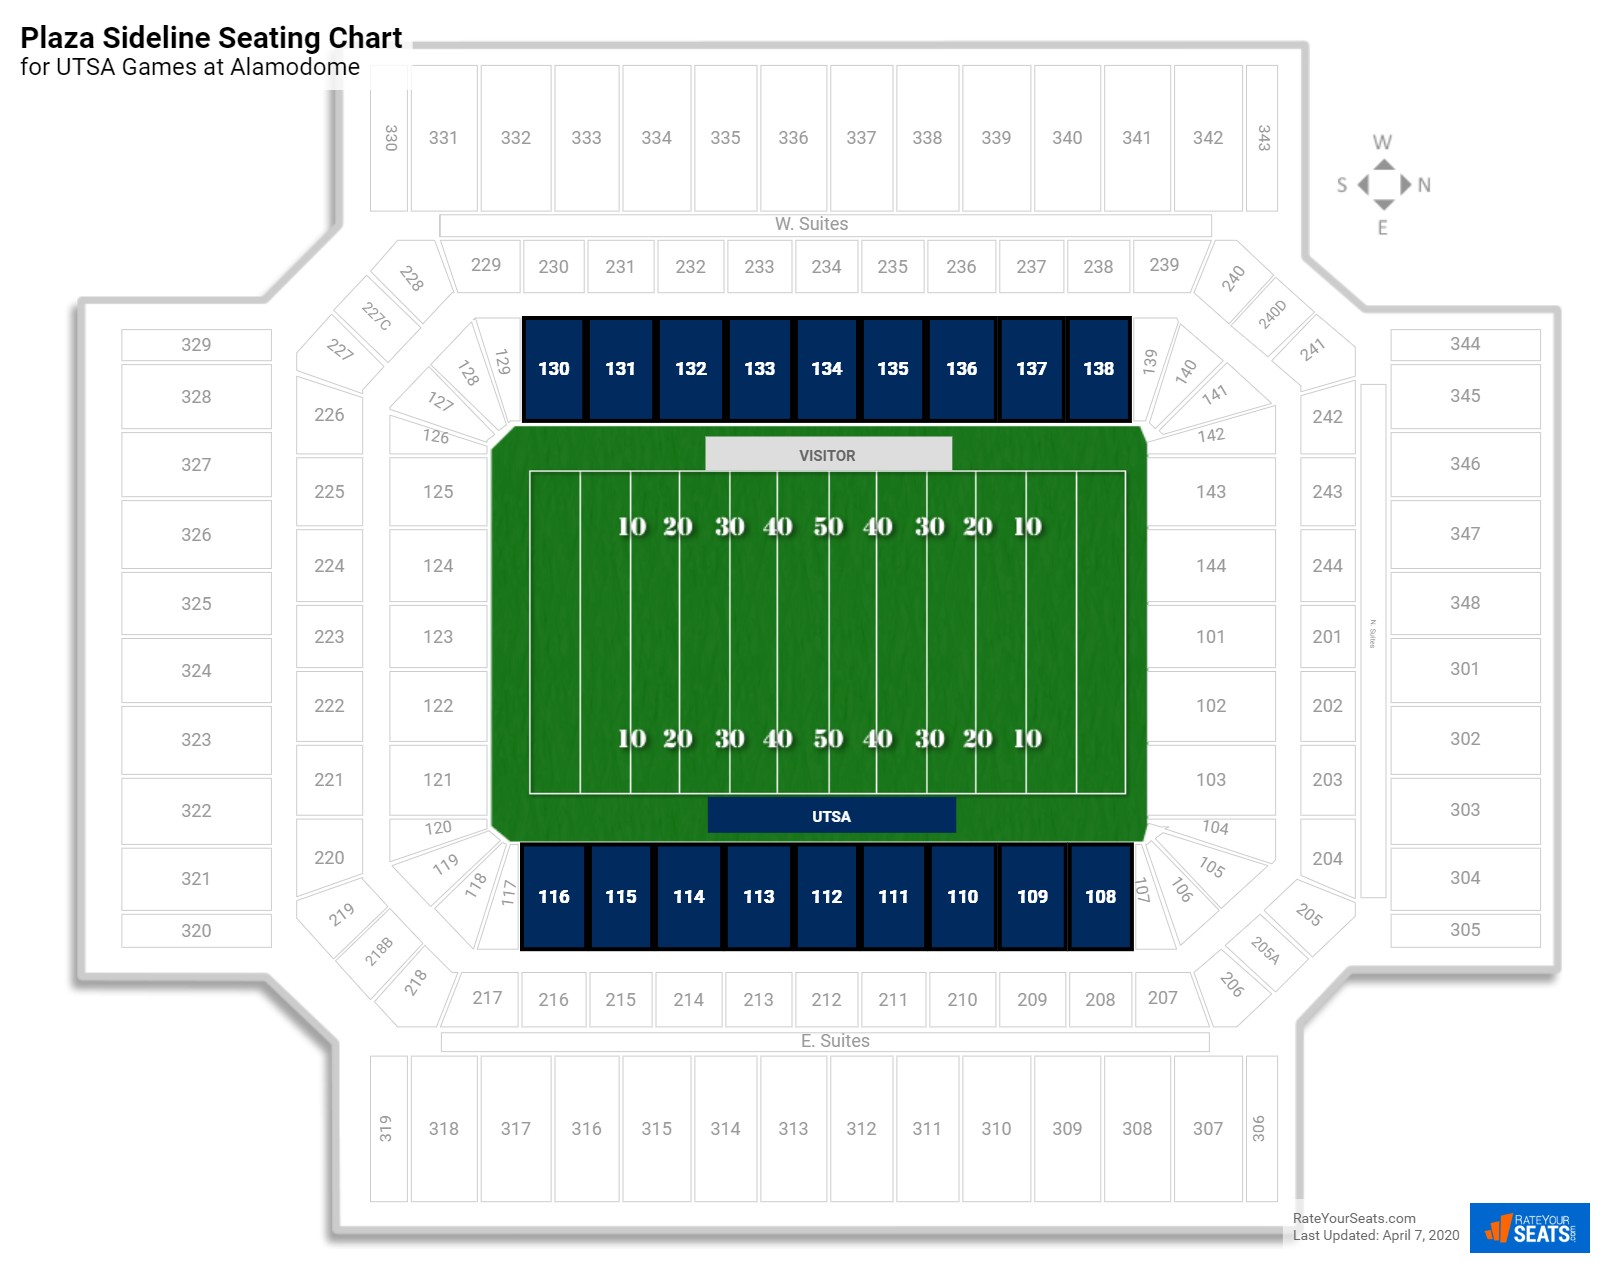 Plaza Sideline - Alamodome Football Seating - RateYourSeats.com